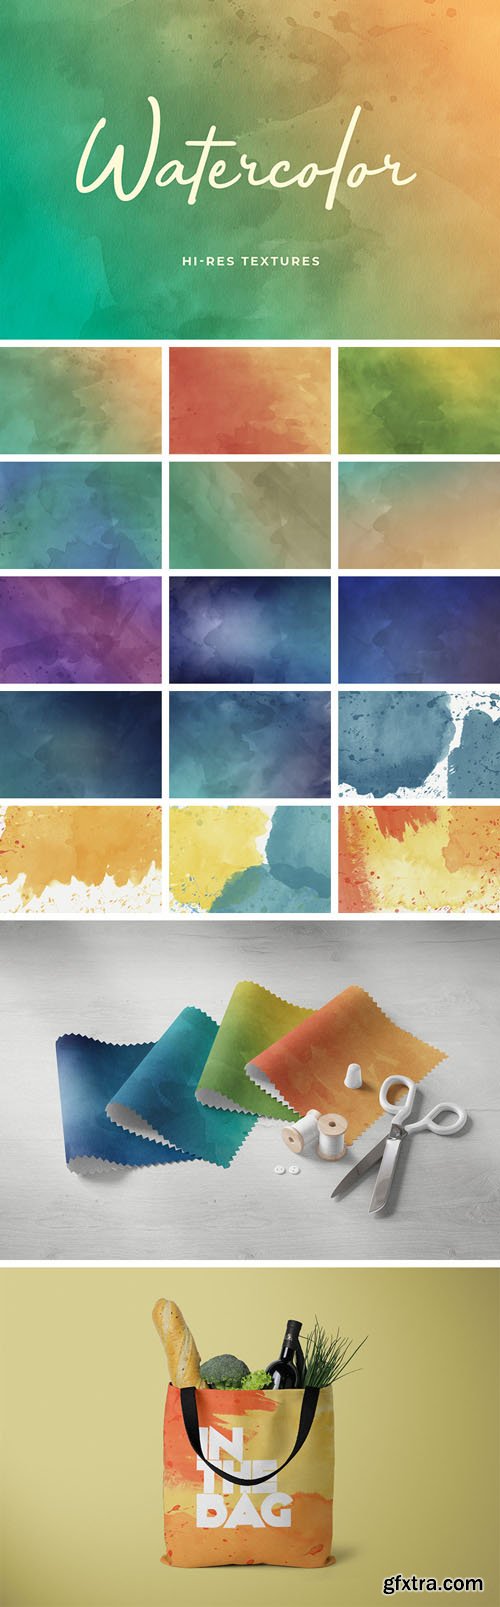 16 Watercolor Hi-Res Textures Set